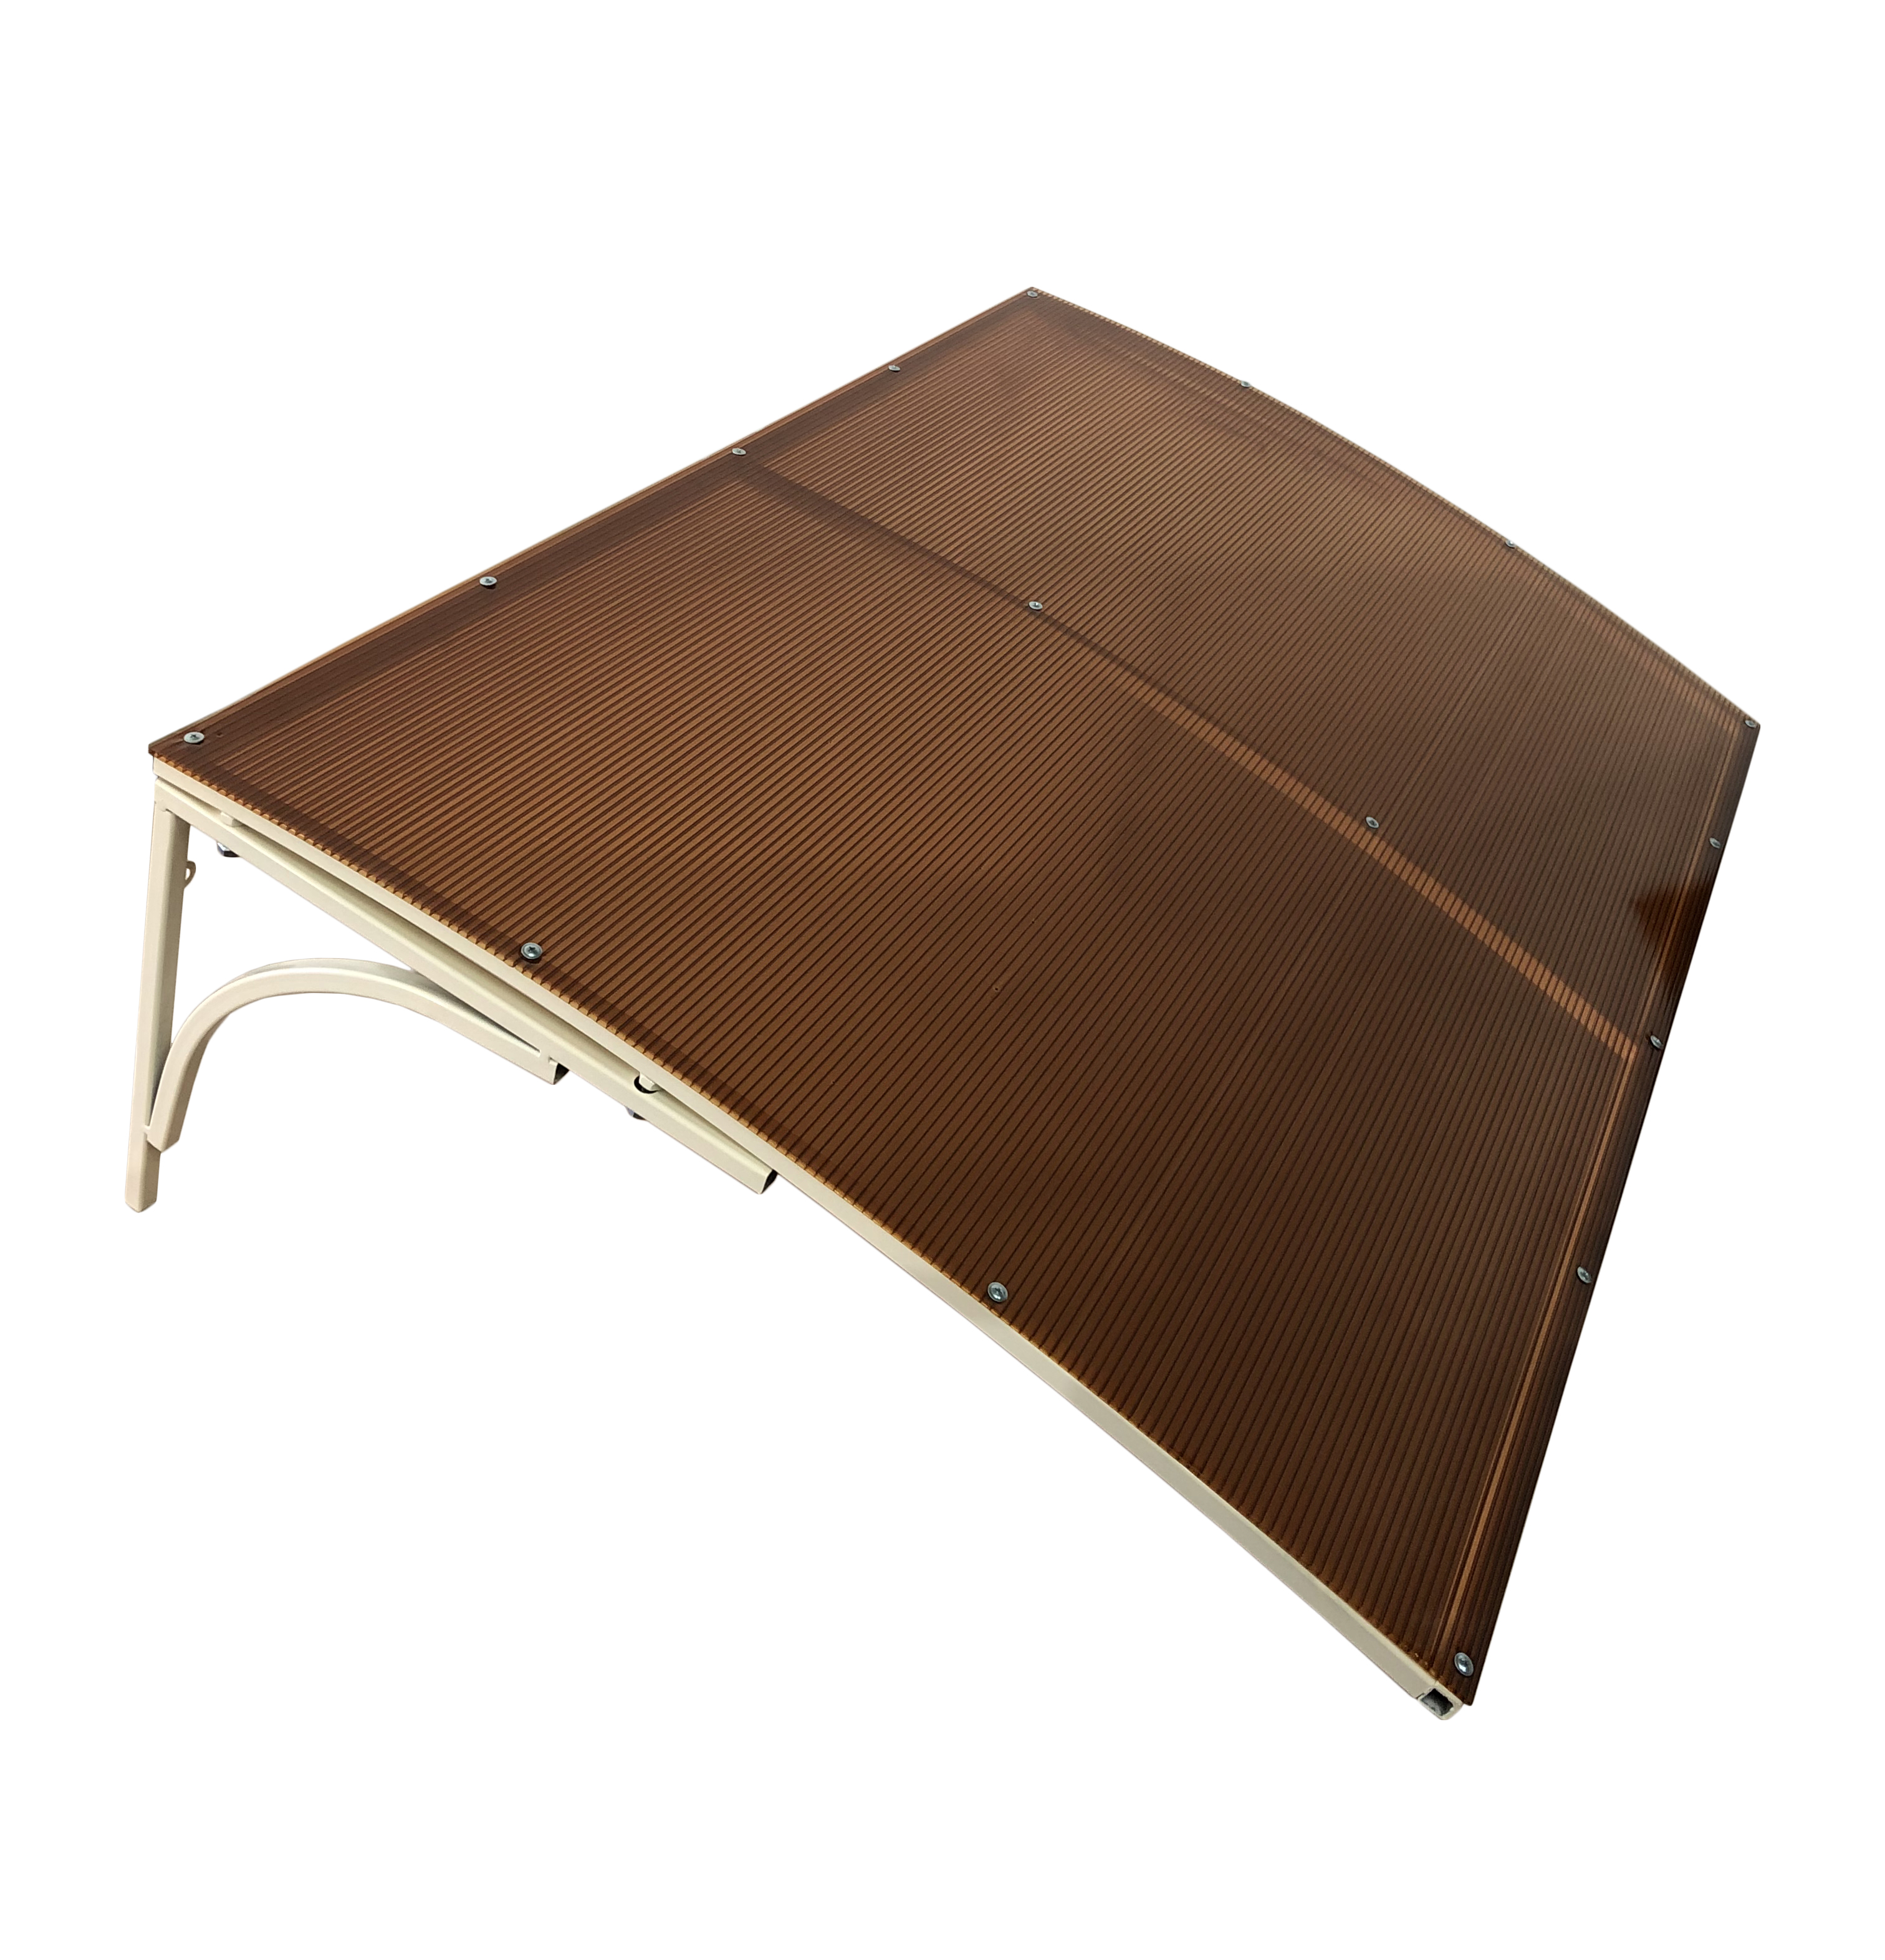 стол деревянный для дачи interlink 600483 80х120х6 темно коричневый Козырек над входной дверью ArtCore, YS71 бежевый каркас, коричневый поликарбонат